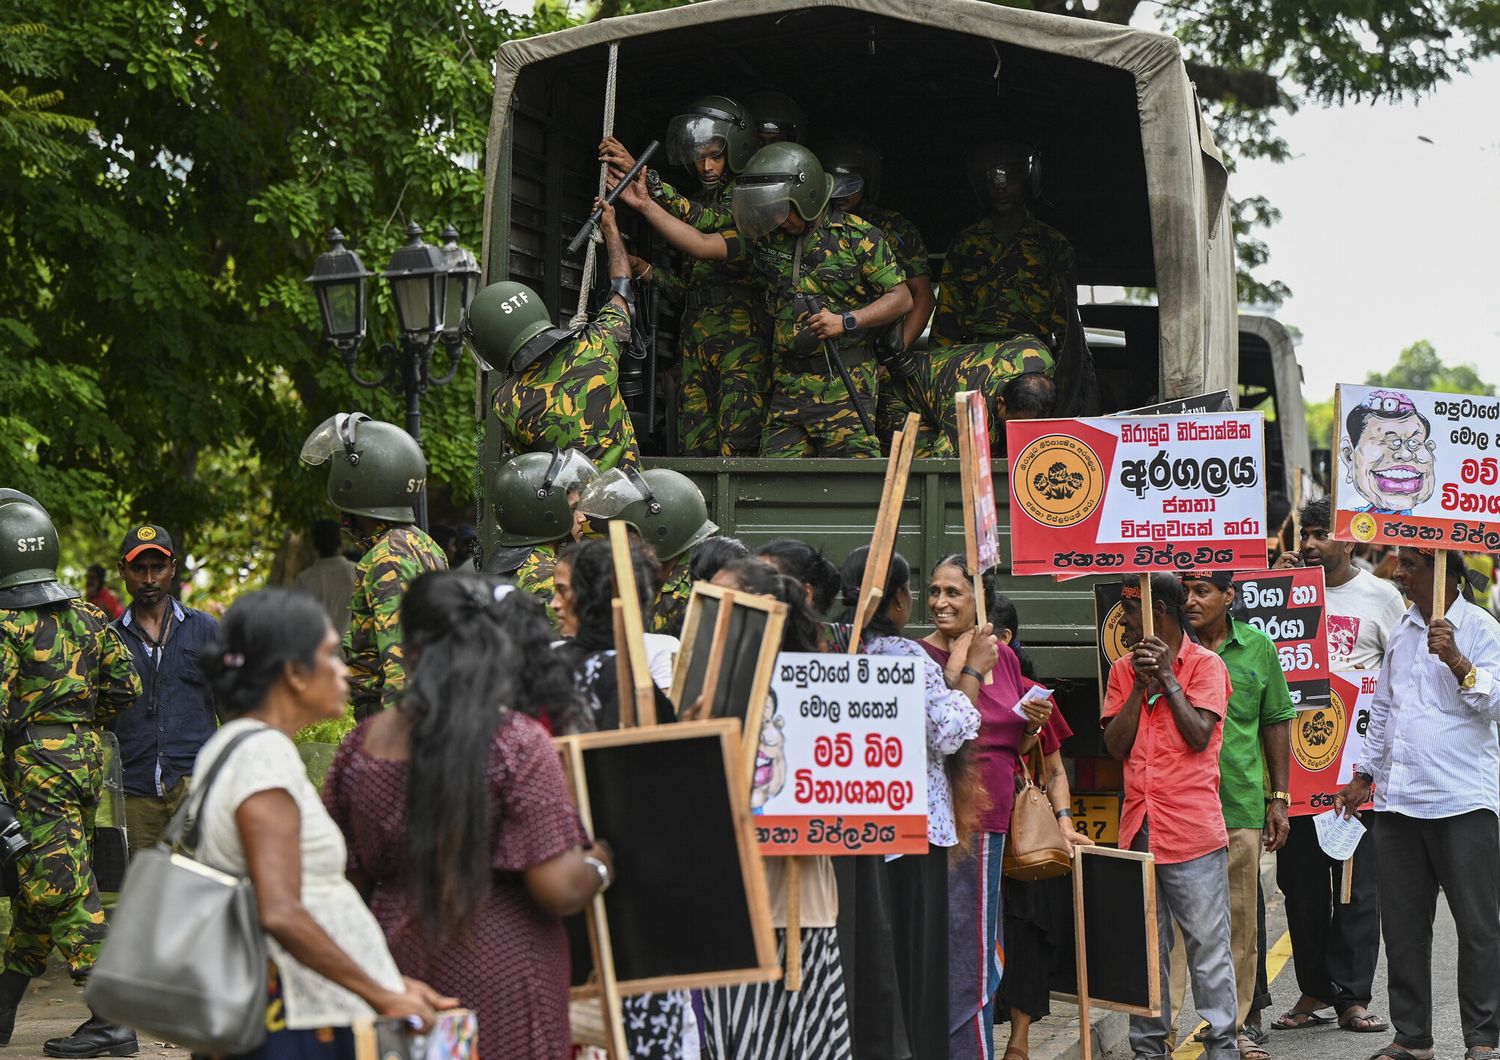 L'esercito interviene a una manifestazione di protesta in Sri Lanka